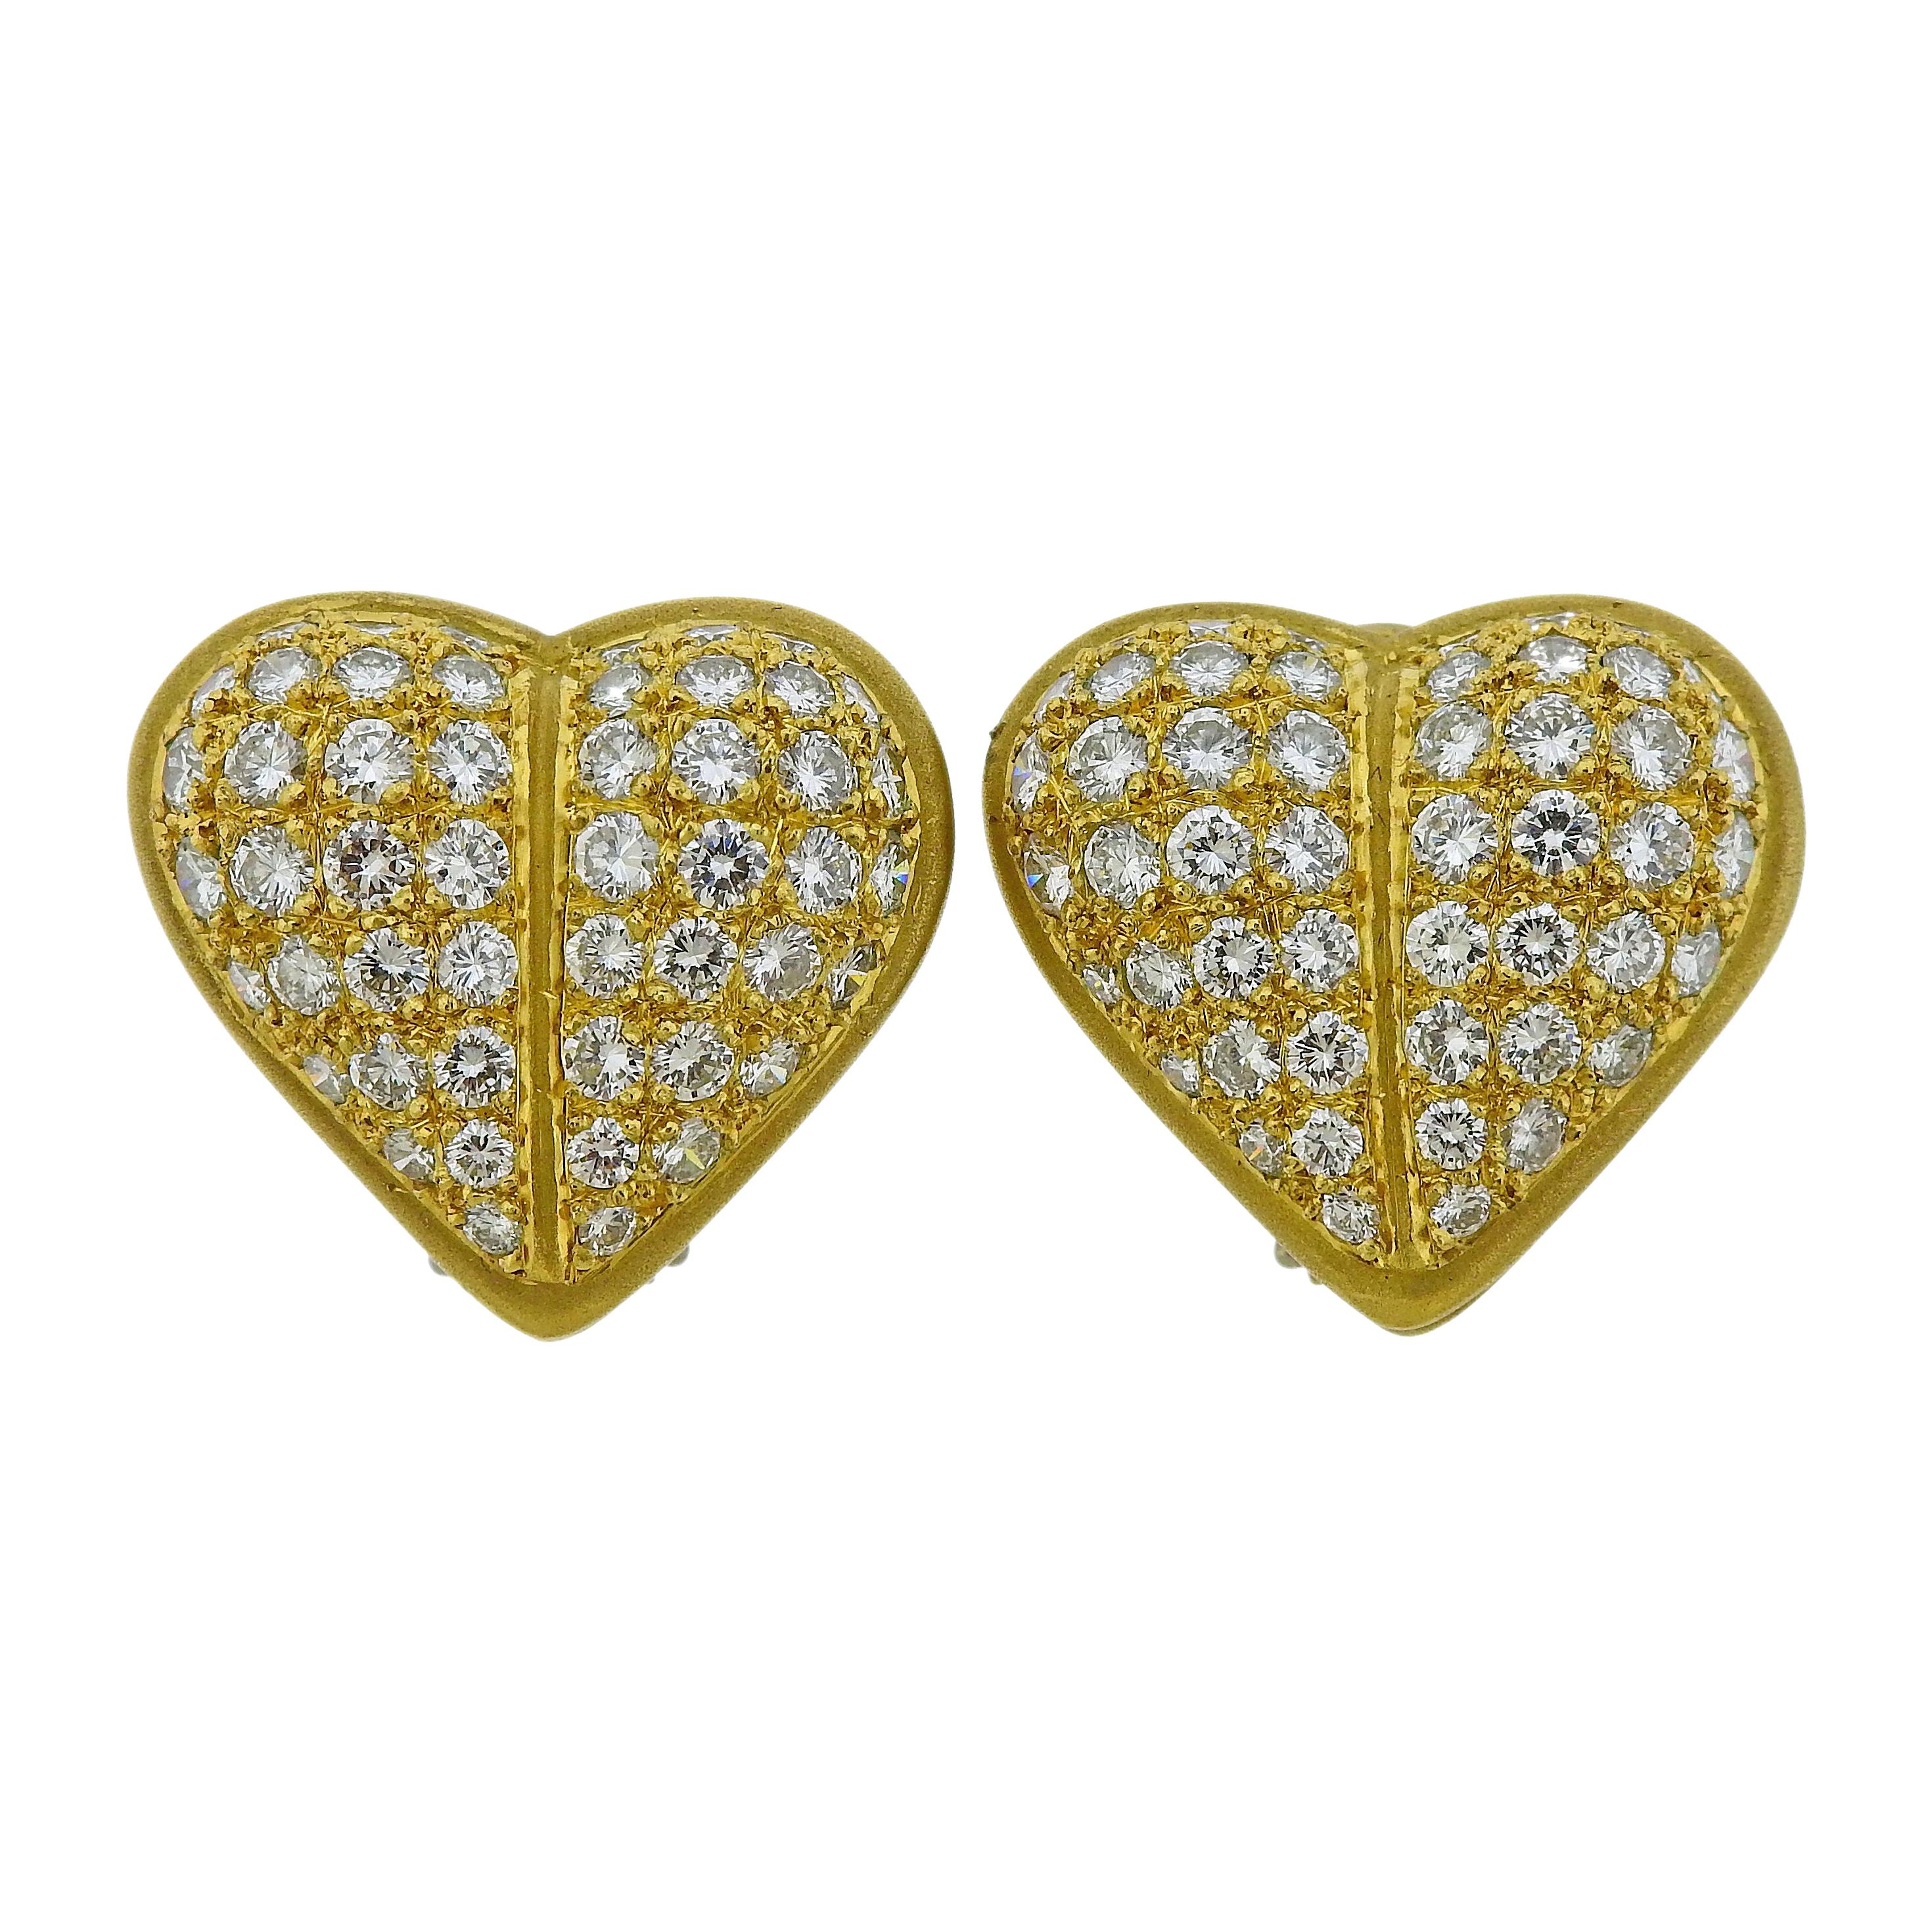 Kieselstein Cord Diamond Gold Heart Earrings